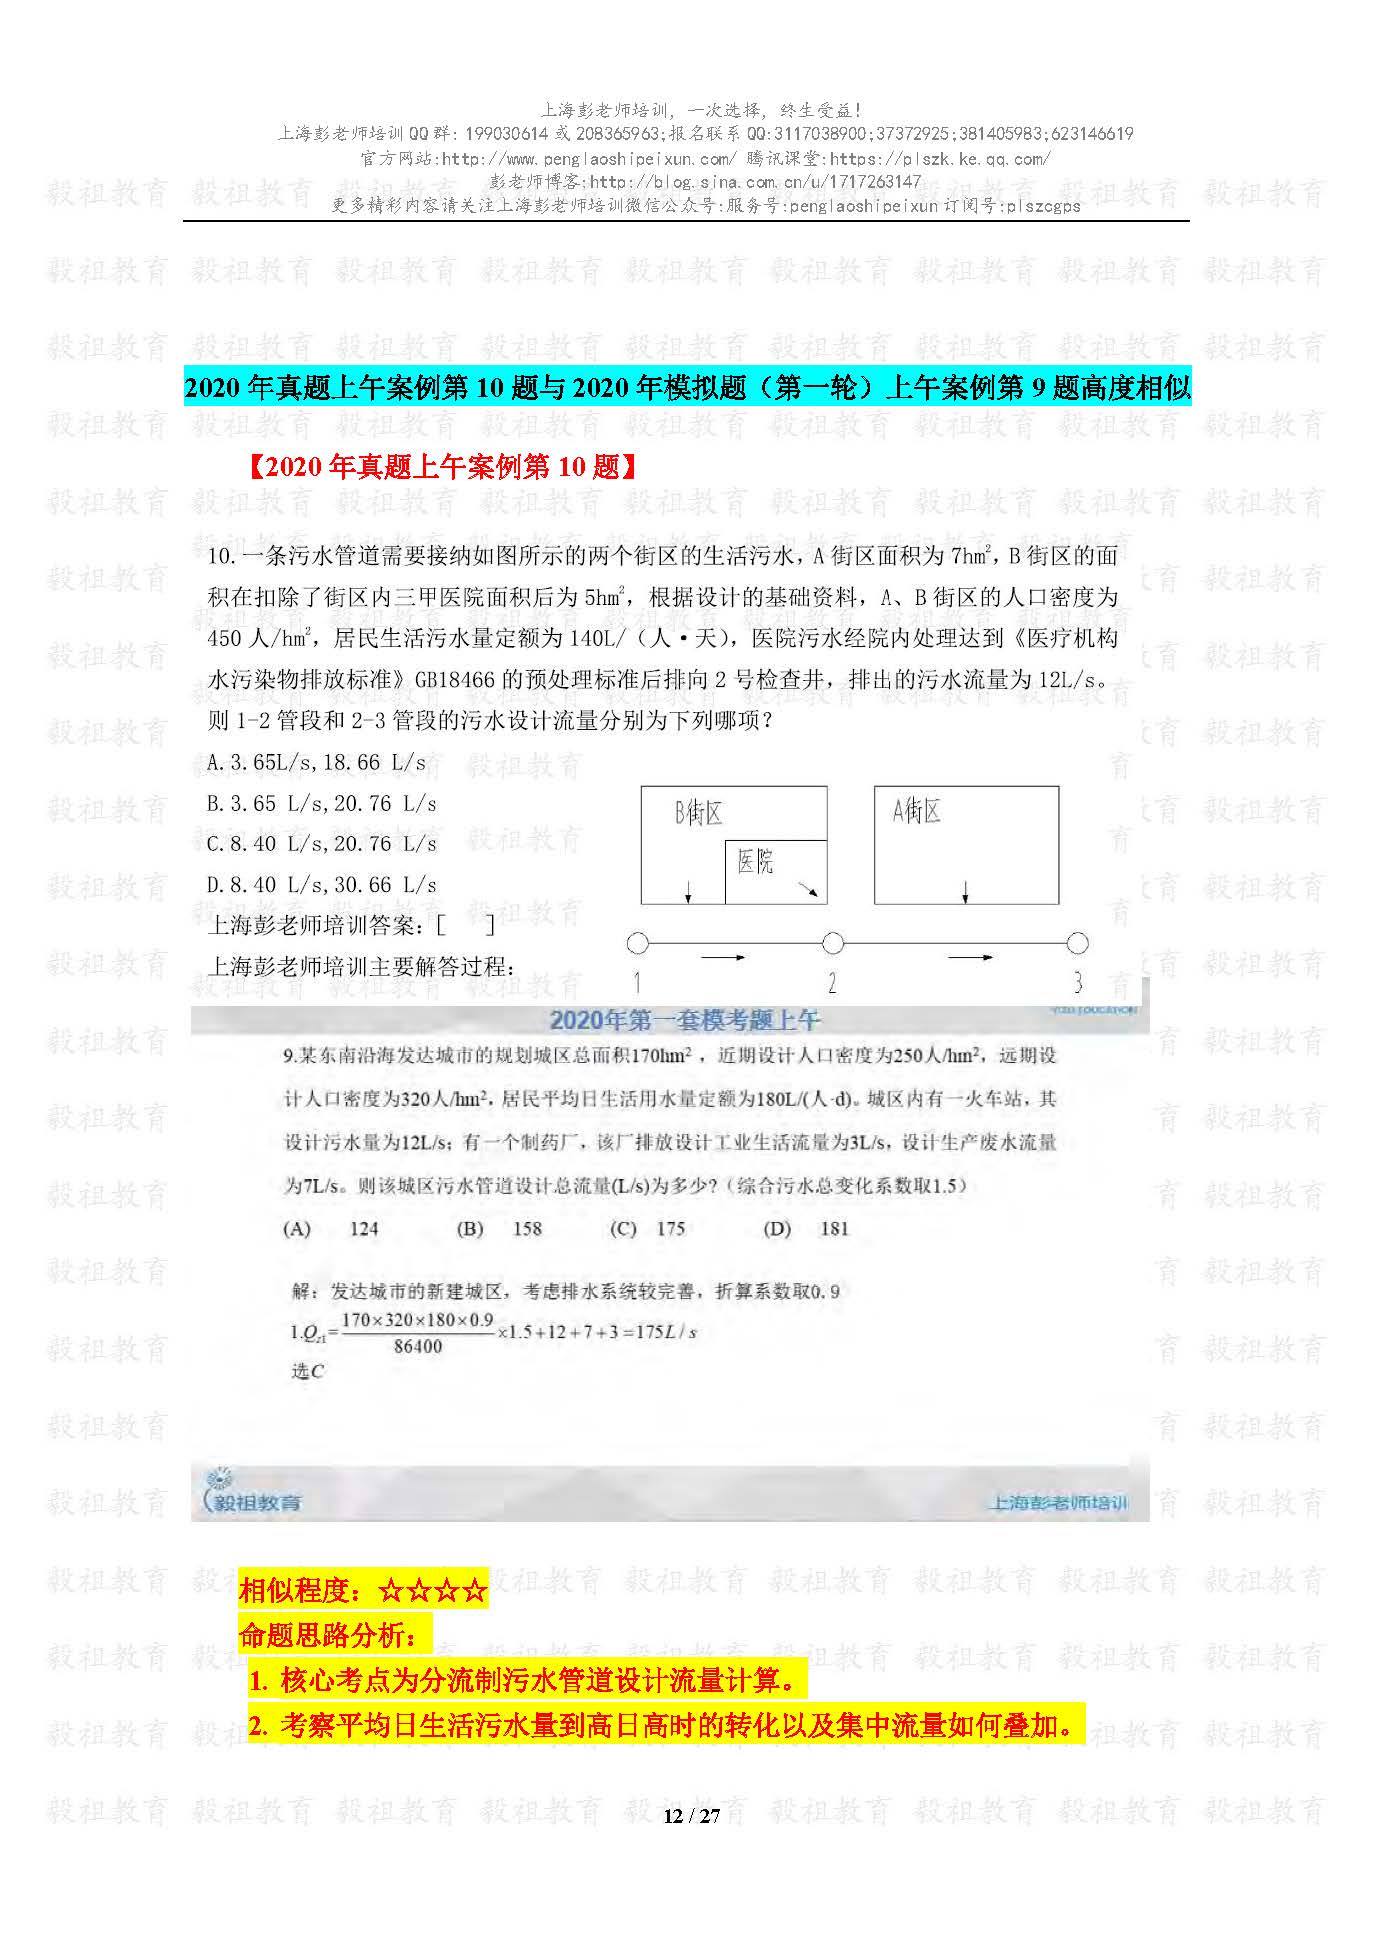 2020注册给排水考试真题与模考题相似度分析-上海彭老师培训_页面_12.jpg.jpg